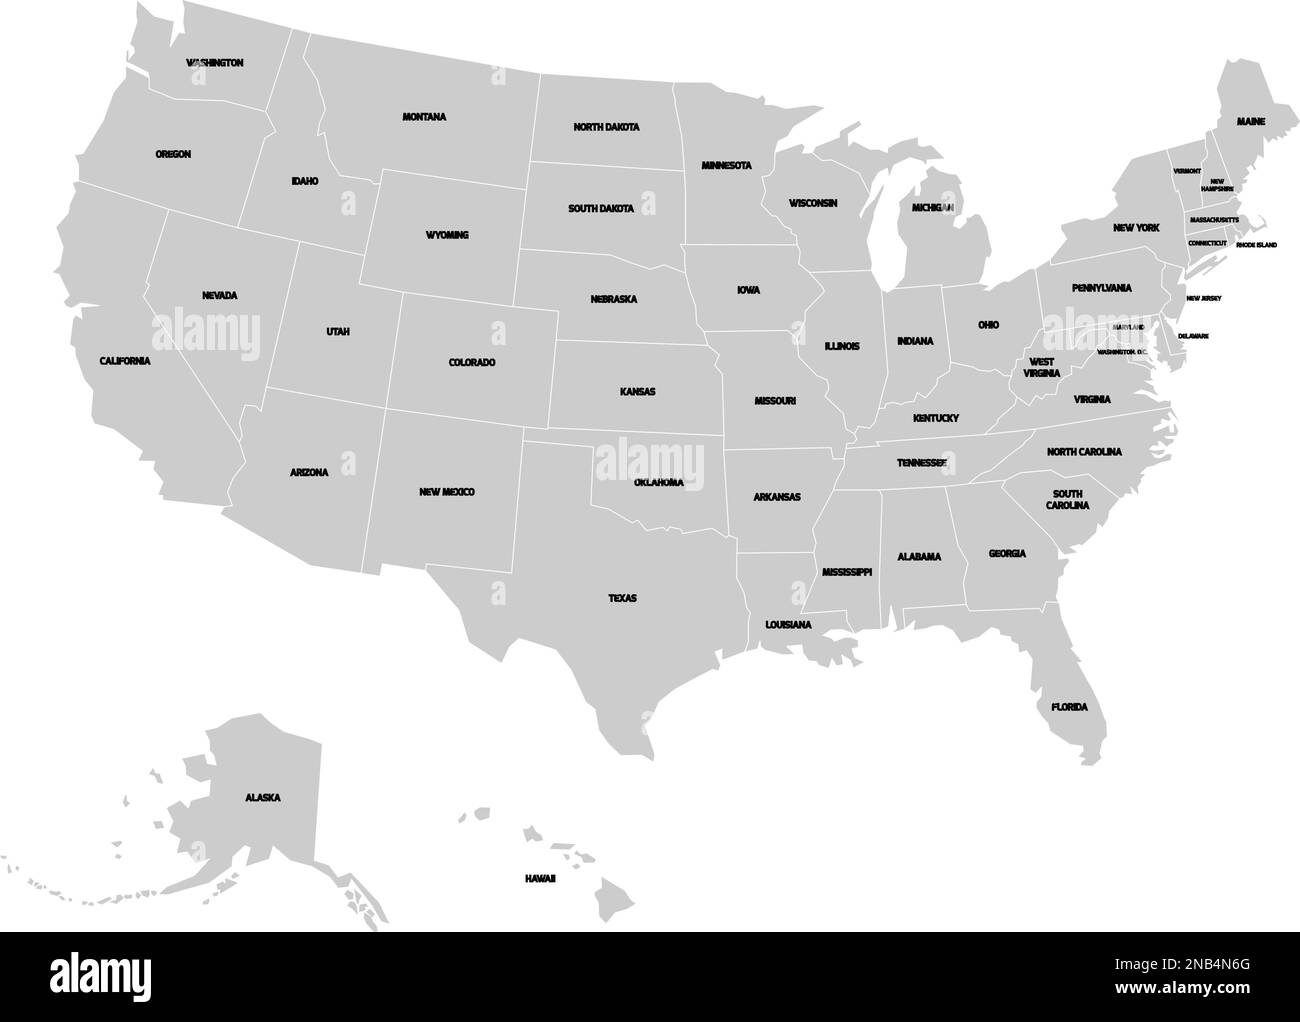 Carte des États-Unis d'Amérique avec le nom de chaque État. Carte vectorielle grise simplifiée sur fond blanc et étiquettes noires. Illustration de Vecteur